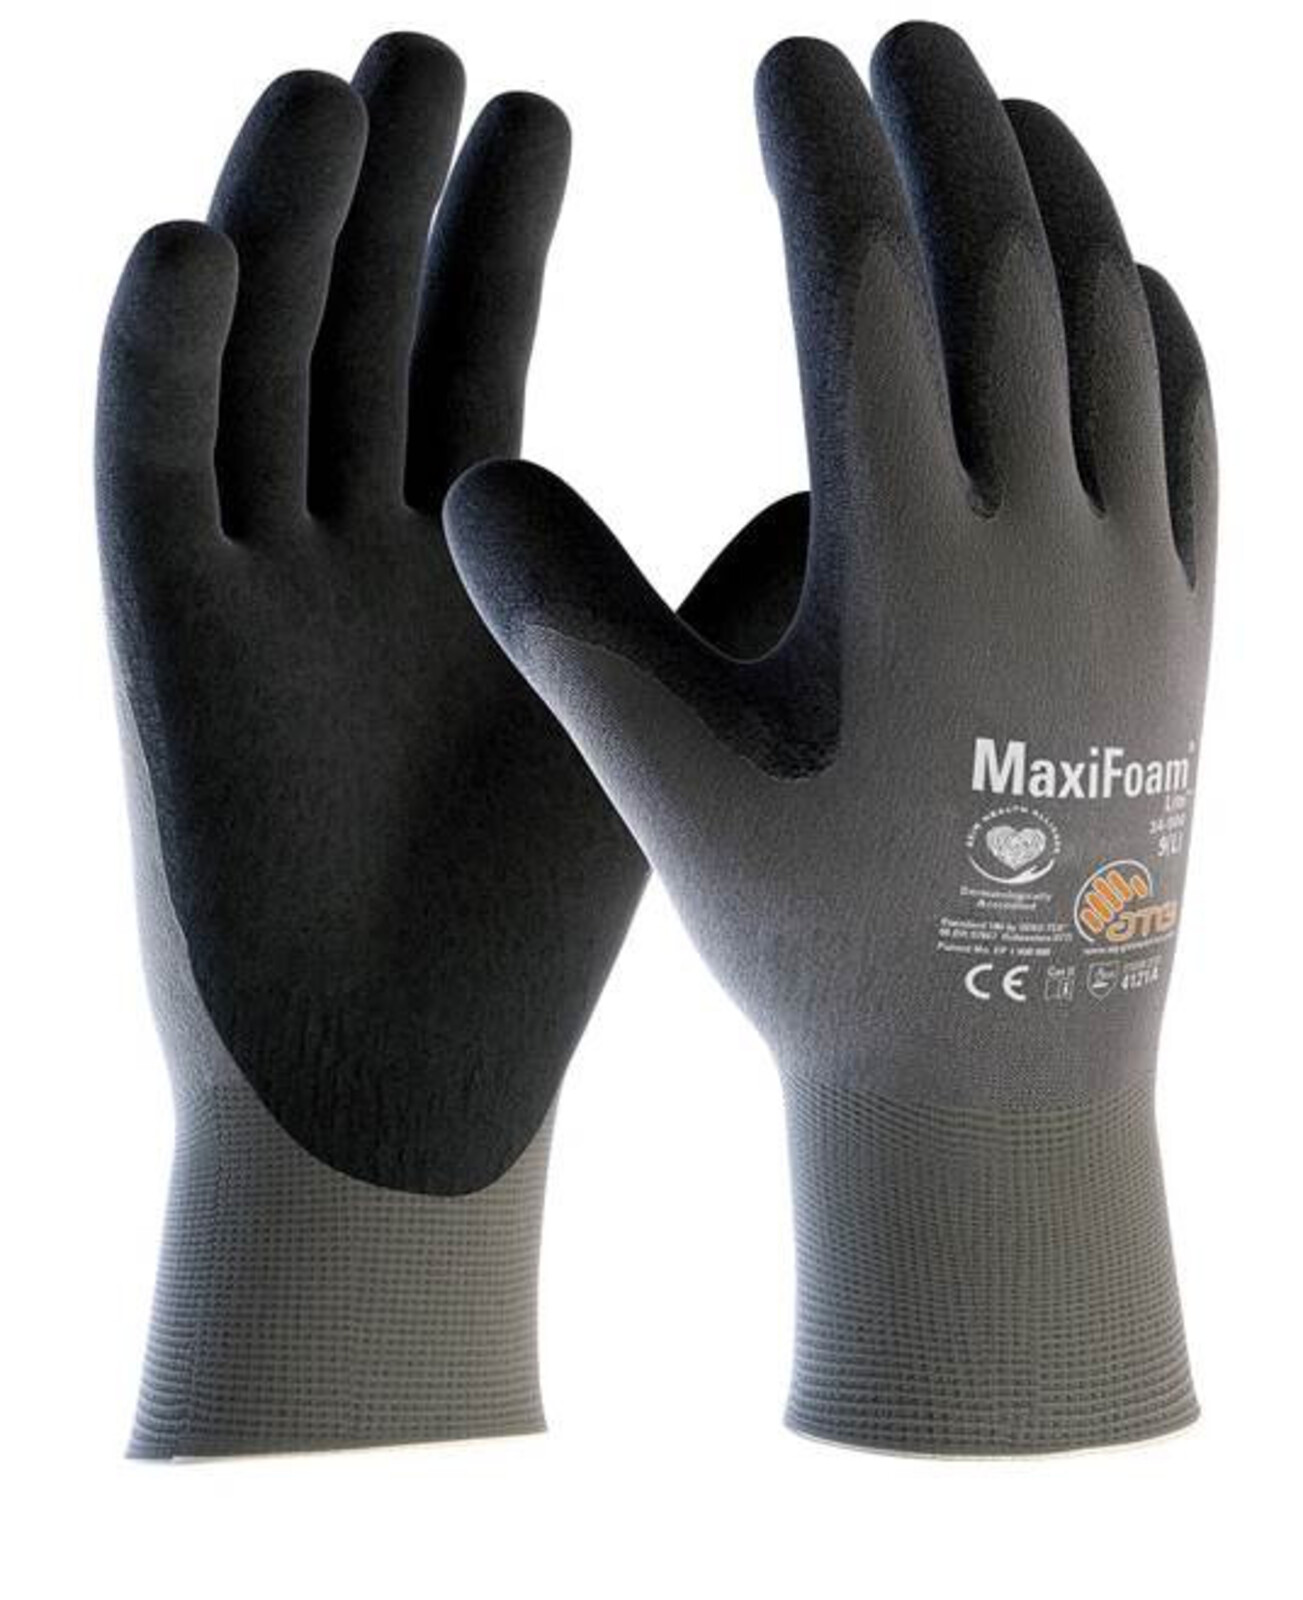 Pracovné rukavice ATG MaxiFoam LITE 34-900 (12 párov) - veľkosť: 9/L, farba: sivá